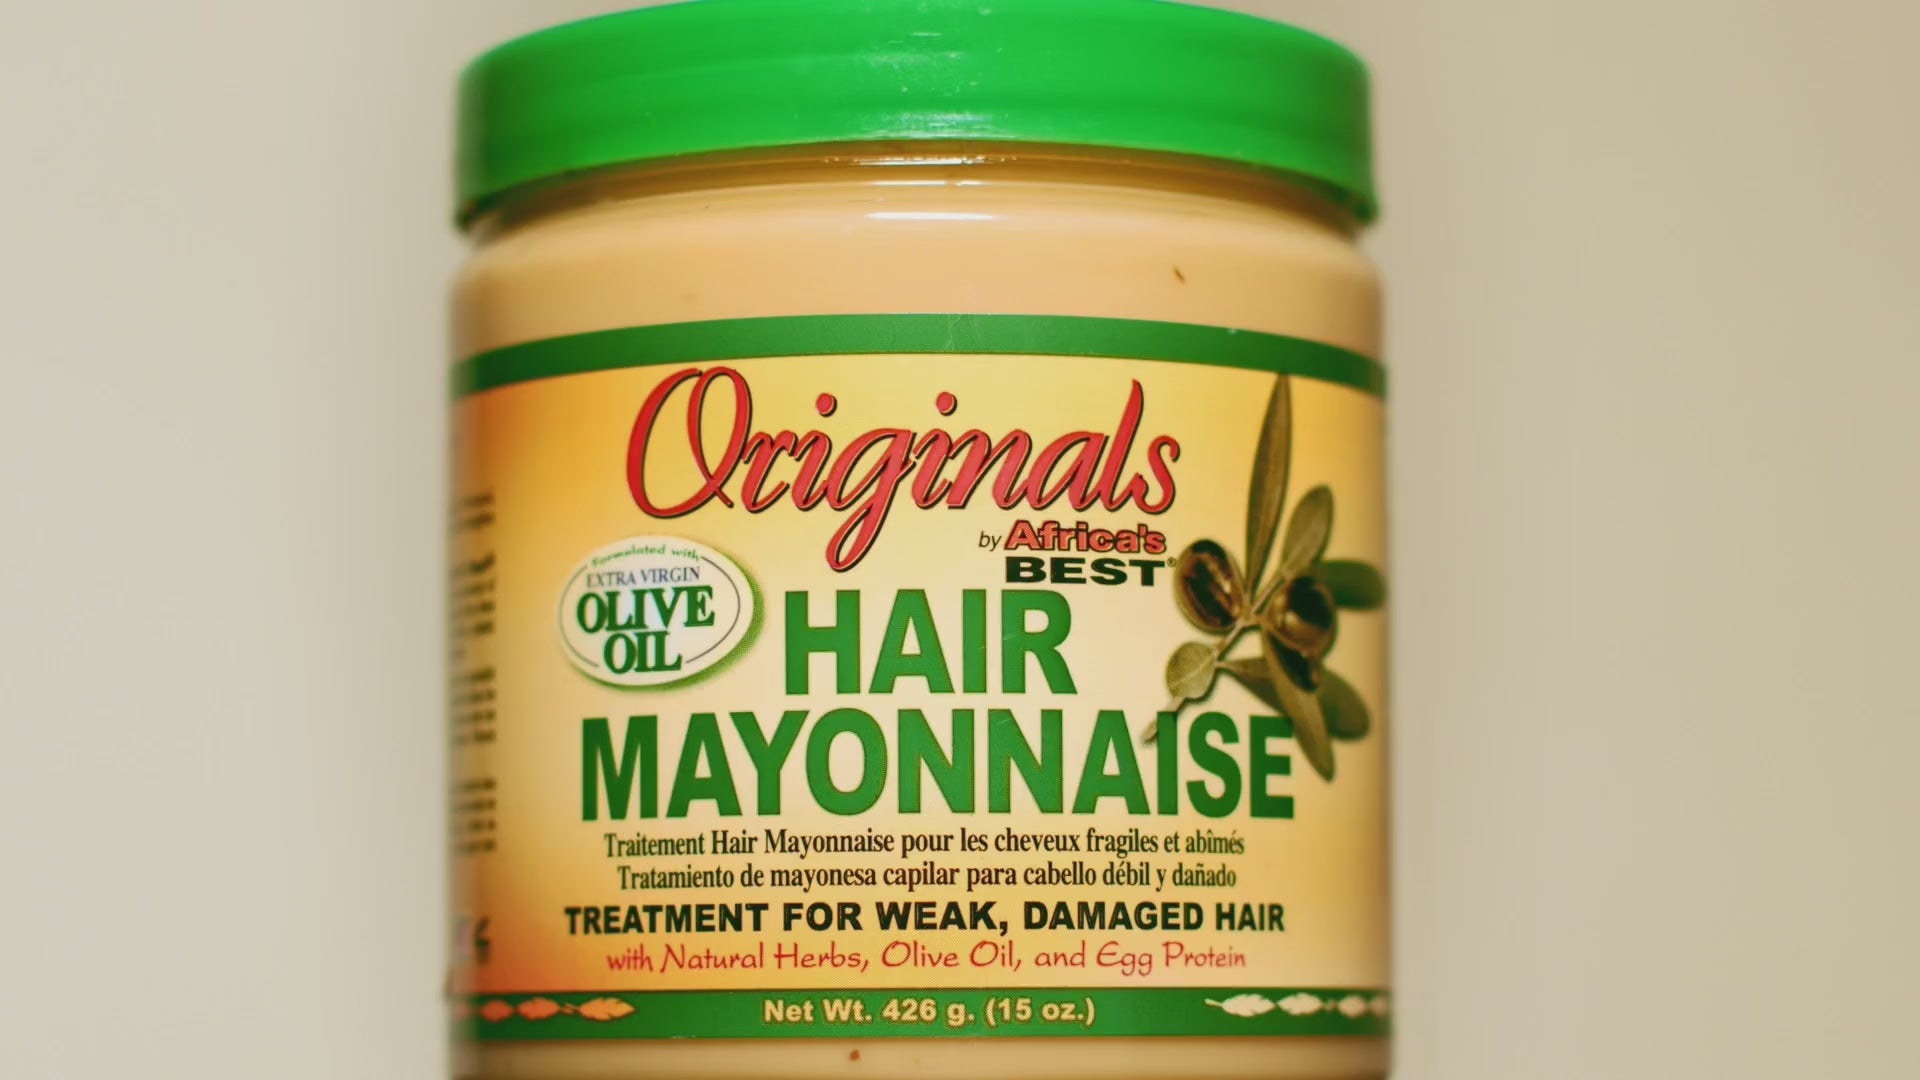 Africa's Best Hair Mayonnaise 15 oz